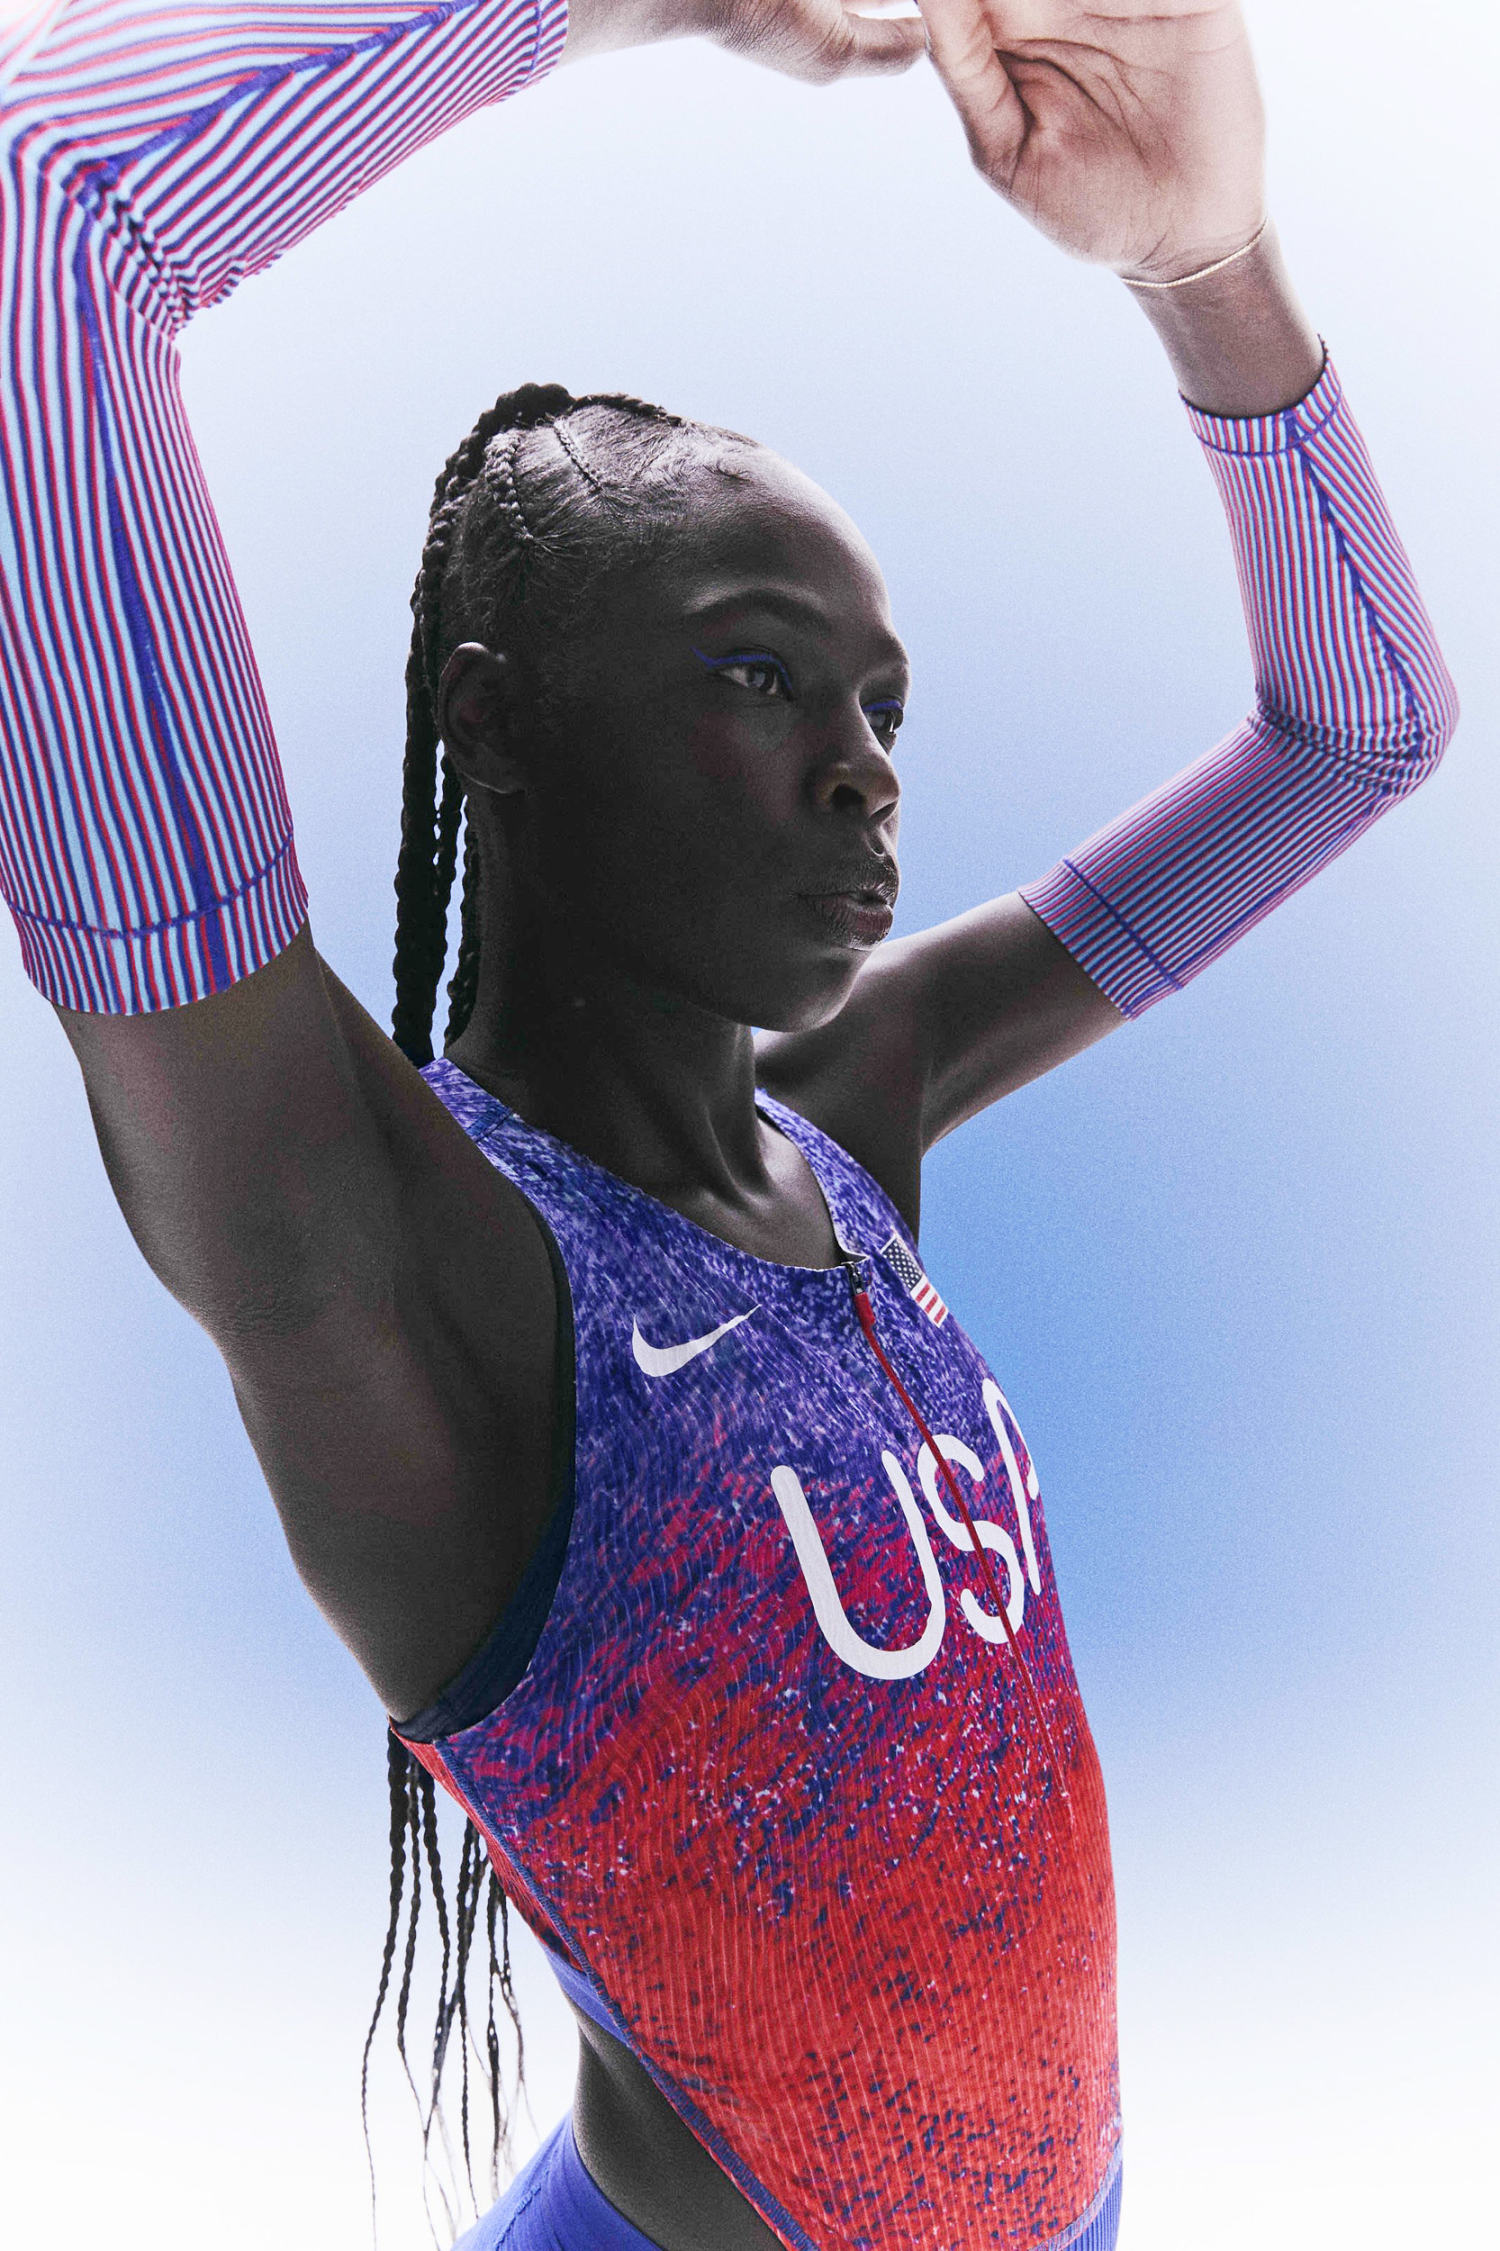 Female athletes criticize Nike's skimpy Olympic track uniform